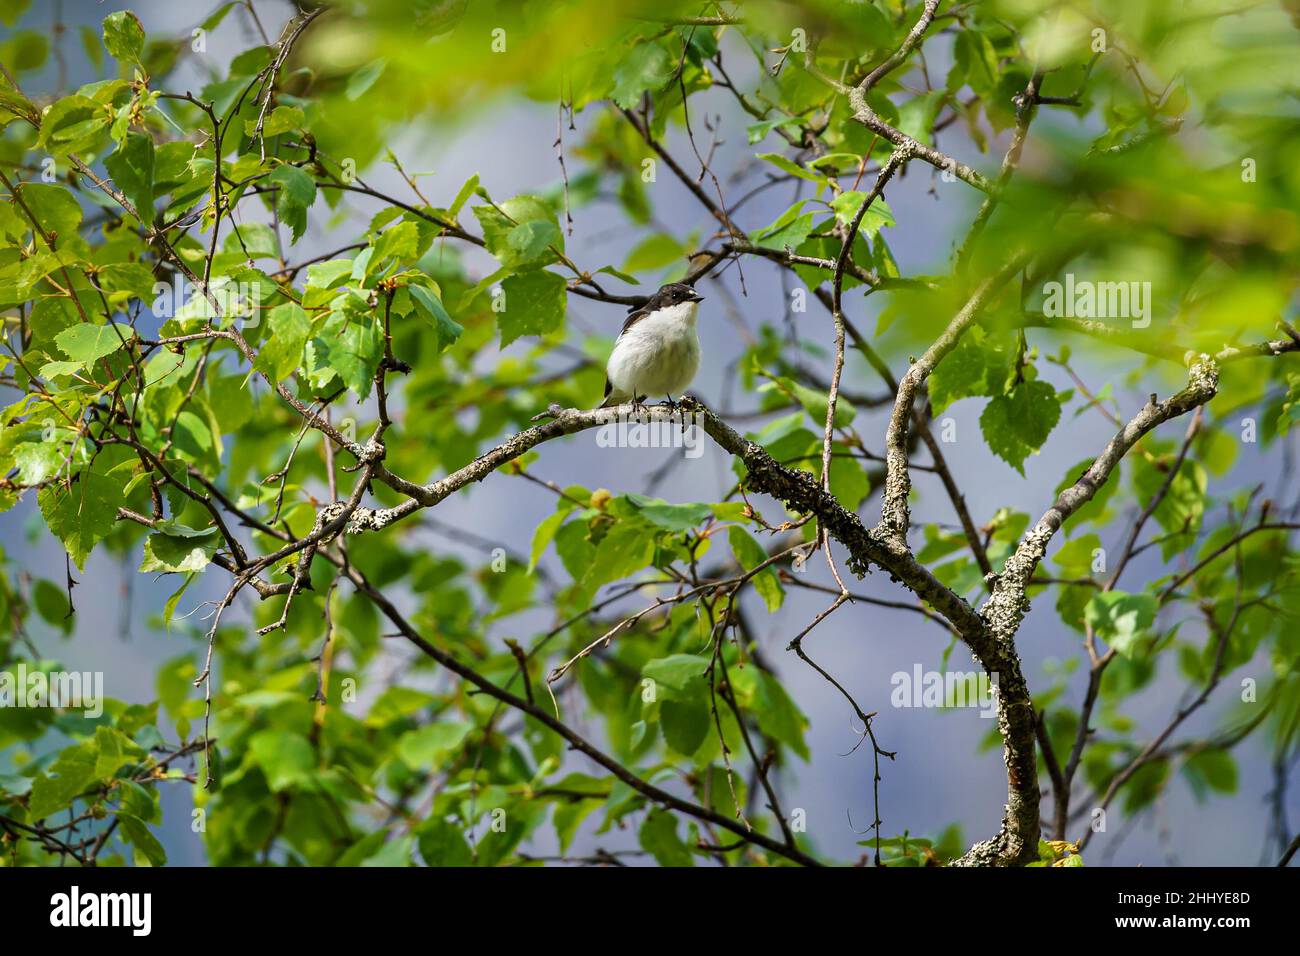 TAFJORD, NORVÈGE - 2020 JUIN 02.Pied flycatcher, Ficedula hypoleuca, assis sur un arbre. Banque D'Images